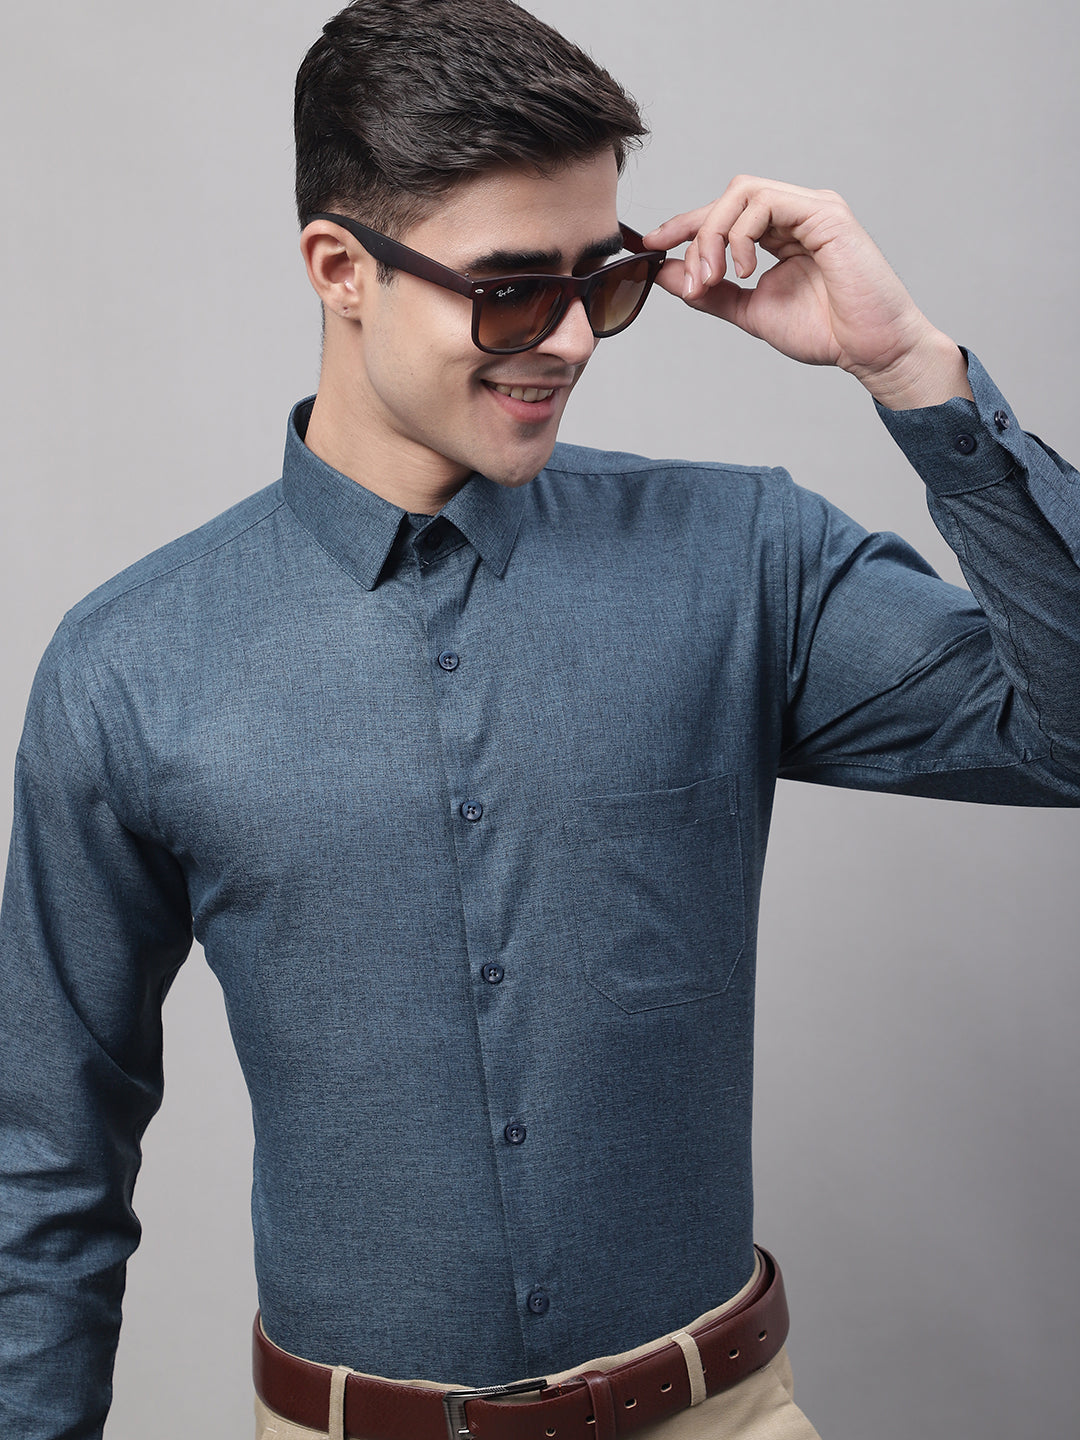 Men's Teal Blue Cotton Solid Formal Shirt